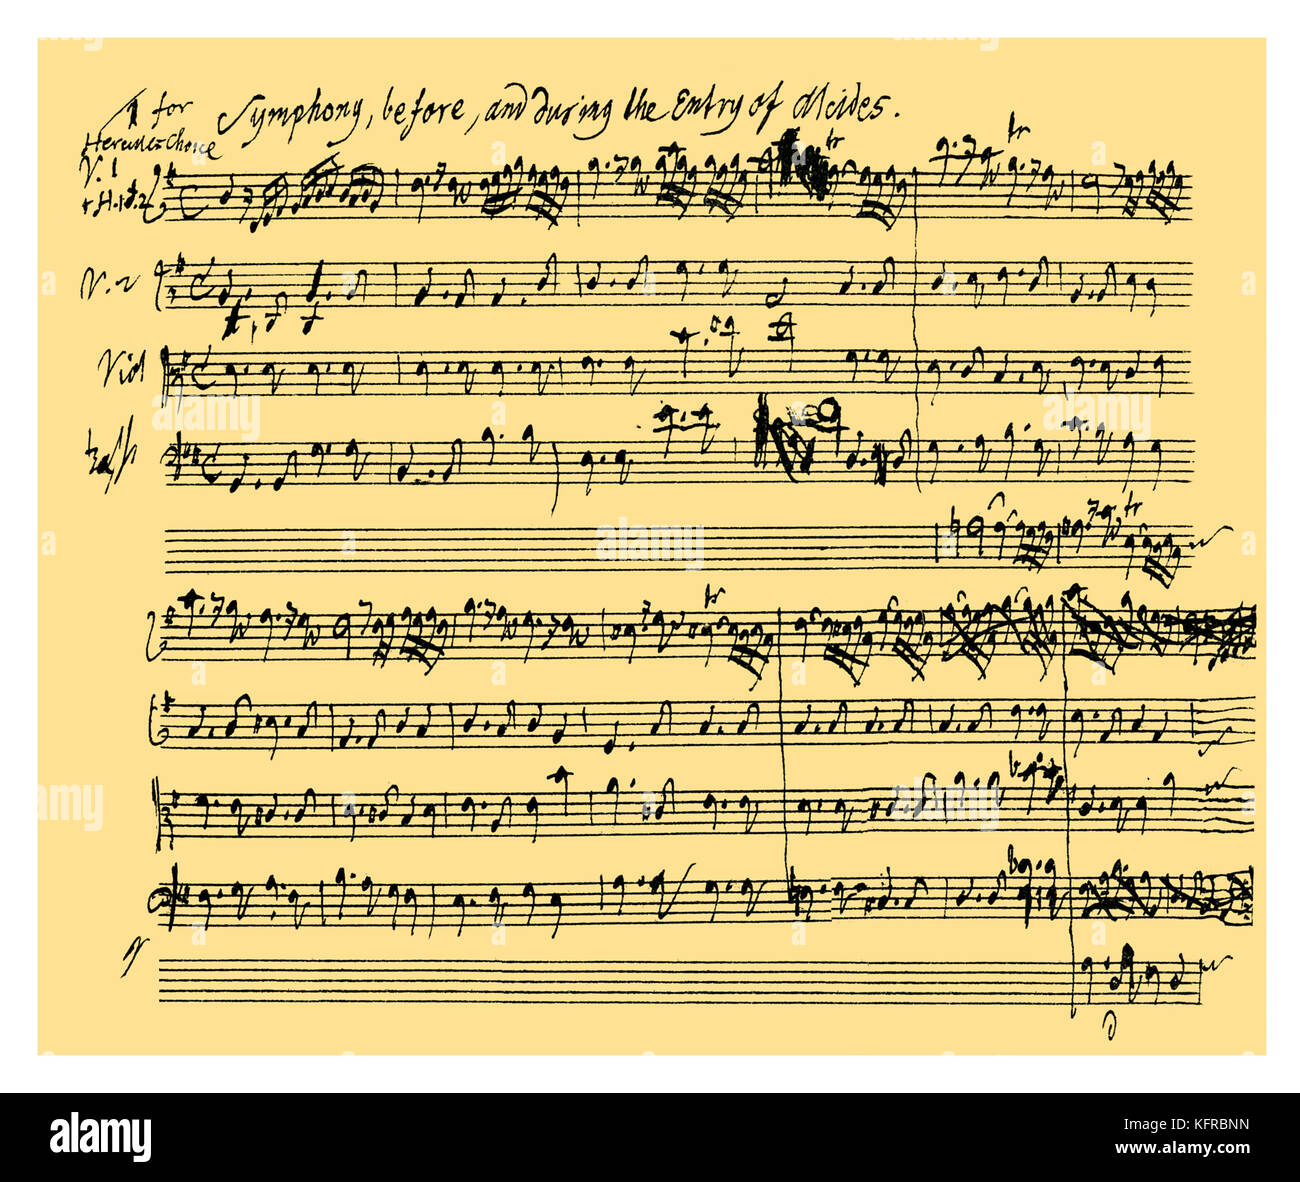 Alcestes Autogramm: Beginn der Sinfonie, die begleitet den Eintrag von Alcides in Tobias Smollett ansonsten unbekannten Spielen von 'Alcestes', die mit Musik von Händel, die zwischen dem 27. Dezember 1749 und 8. Januar 1750 eingestellt. Die Zusammensetzung ist die einzige bekannte Exemplar der Bühnenmusik von Händel und nur zwei Rechtsakte sind noch vorhanden. Die Musik wurde nie durchgeführt, die ursprünglich (für Covent Garden Theatre), sondern, wie sich aus den Hinweis in der Platte, Teile davon für "Die Wahl des Herkules", Juni - Juli 1750 verwendet wurden. Deutsch-englischer Komponist, 23. Februar 1685 - 14. April 1759 Stockfoto